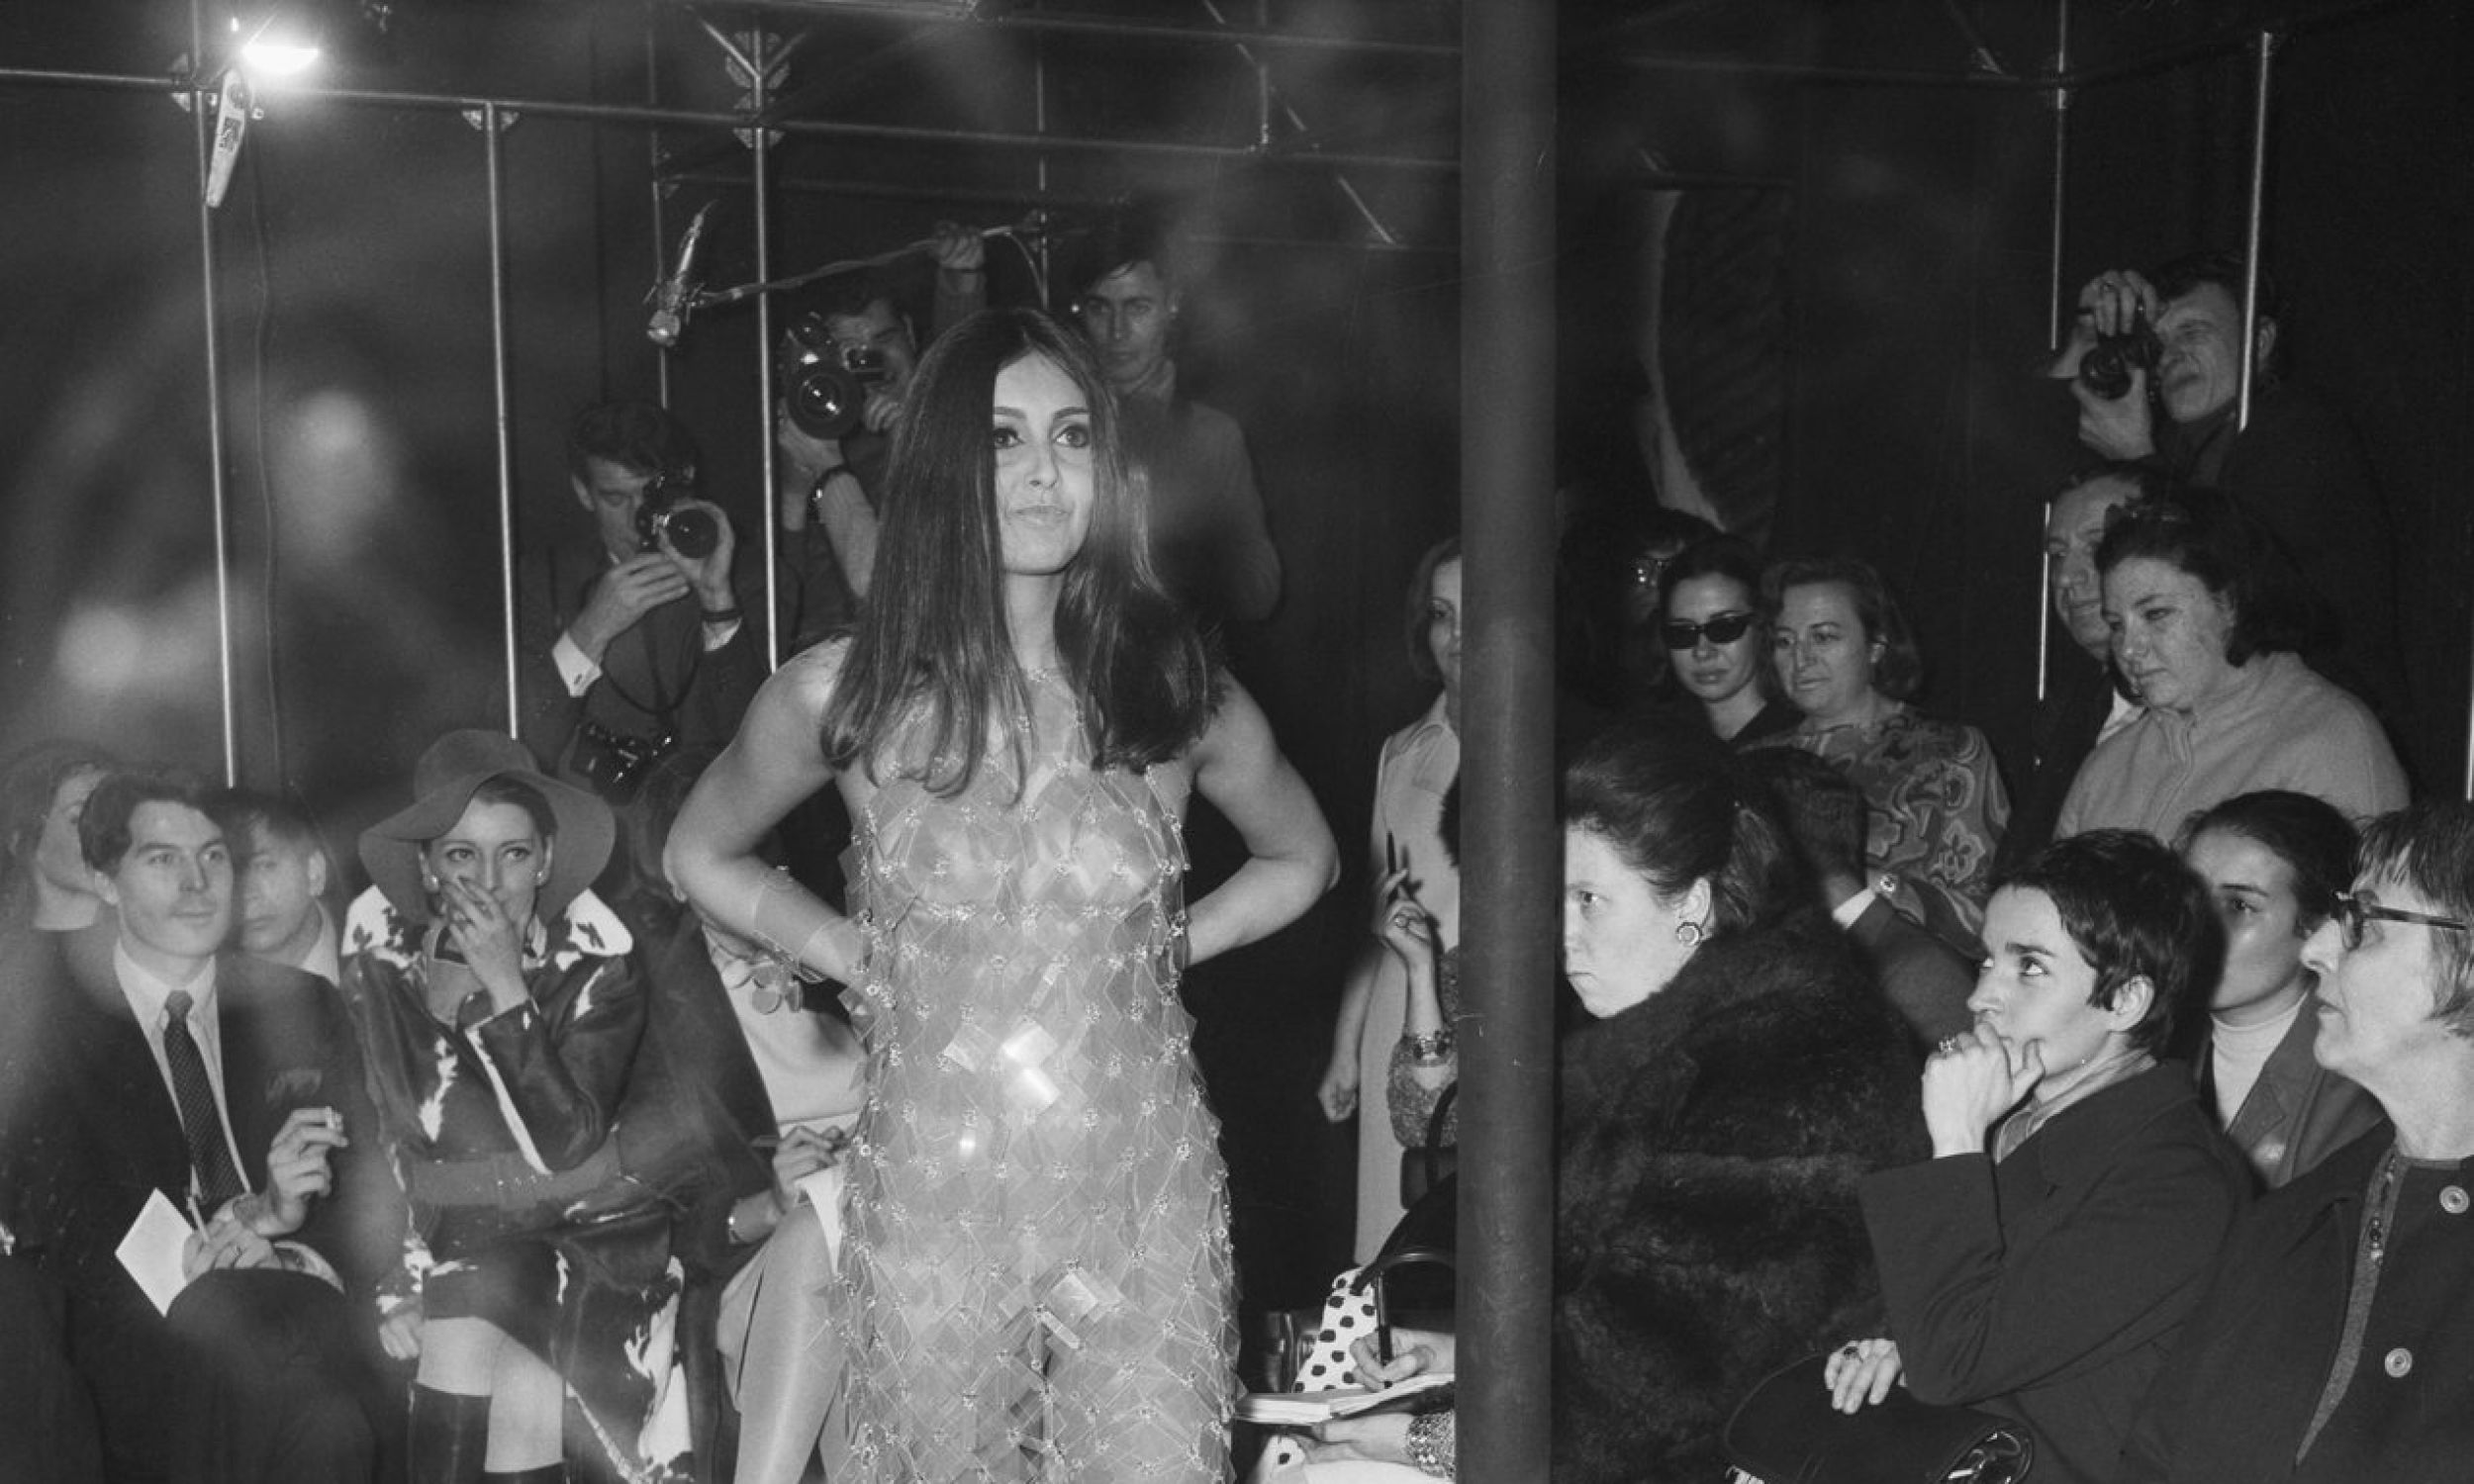 1967: Модель в полупрозрачном платье. Показ нарядов из весенне-летней коллекции Paco Rabanne. Фото: UPI PHOTO/Getty Images